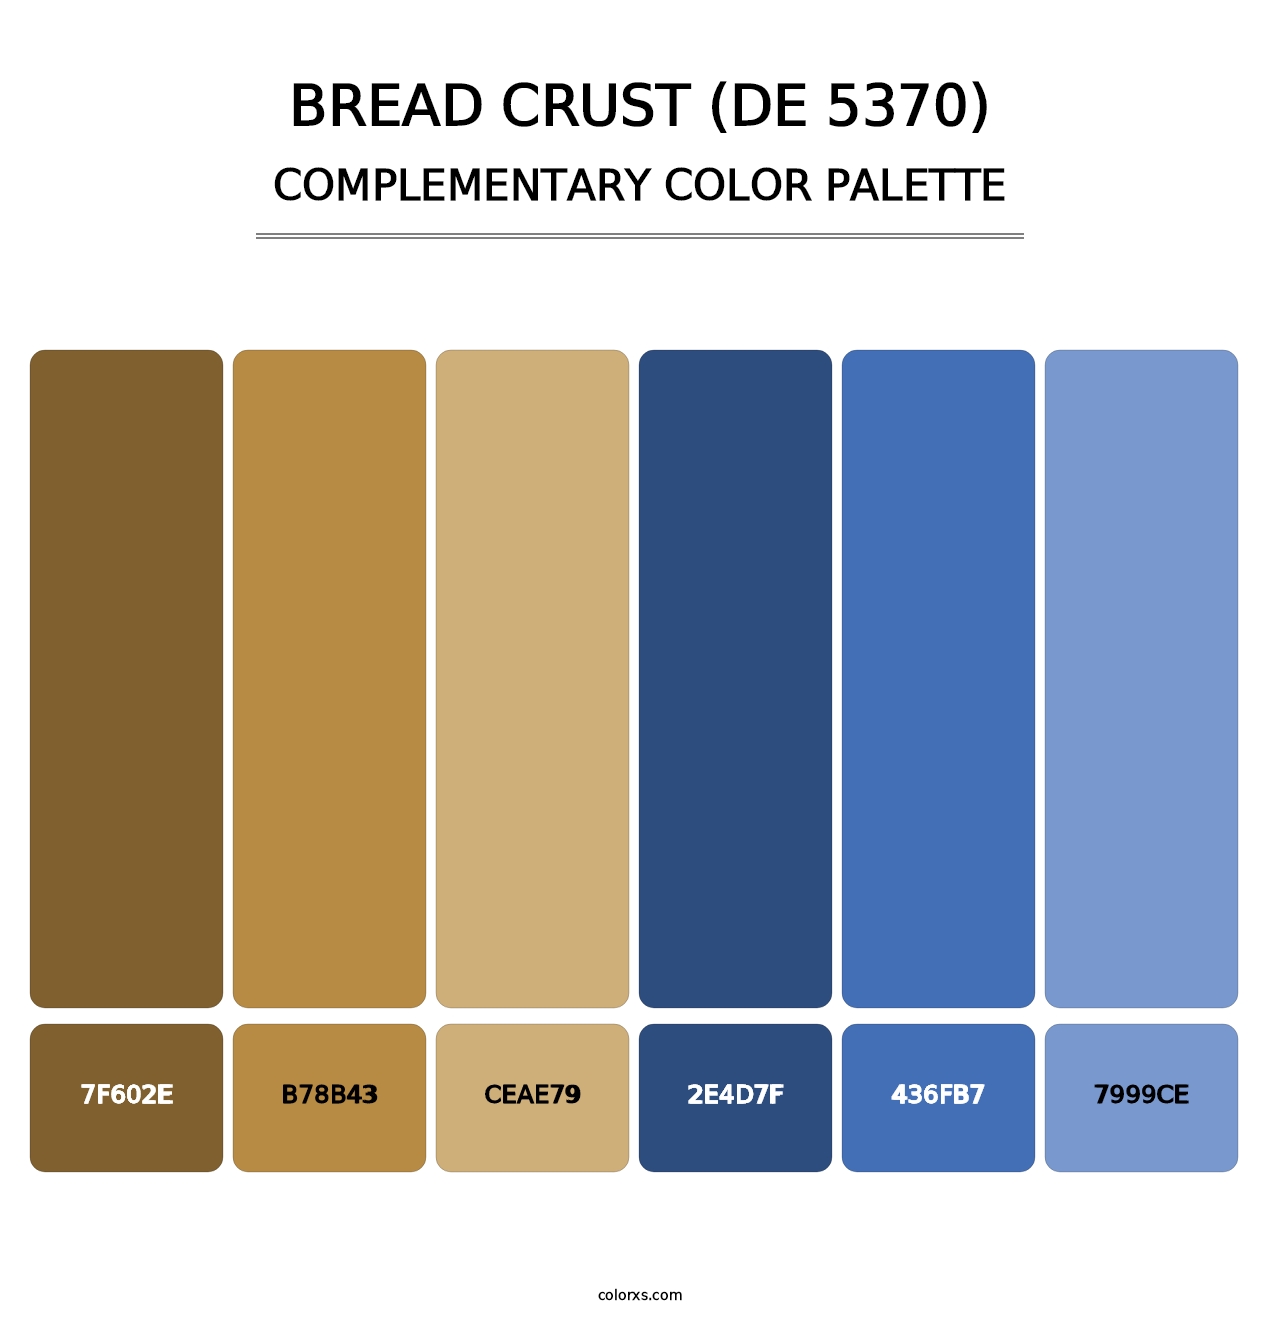 Bread Crust (DE 5370) - Complementary Color Palette